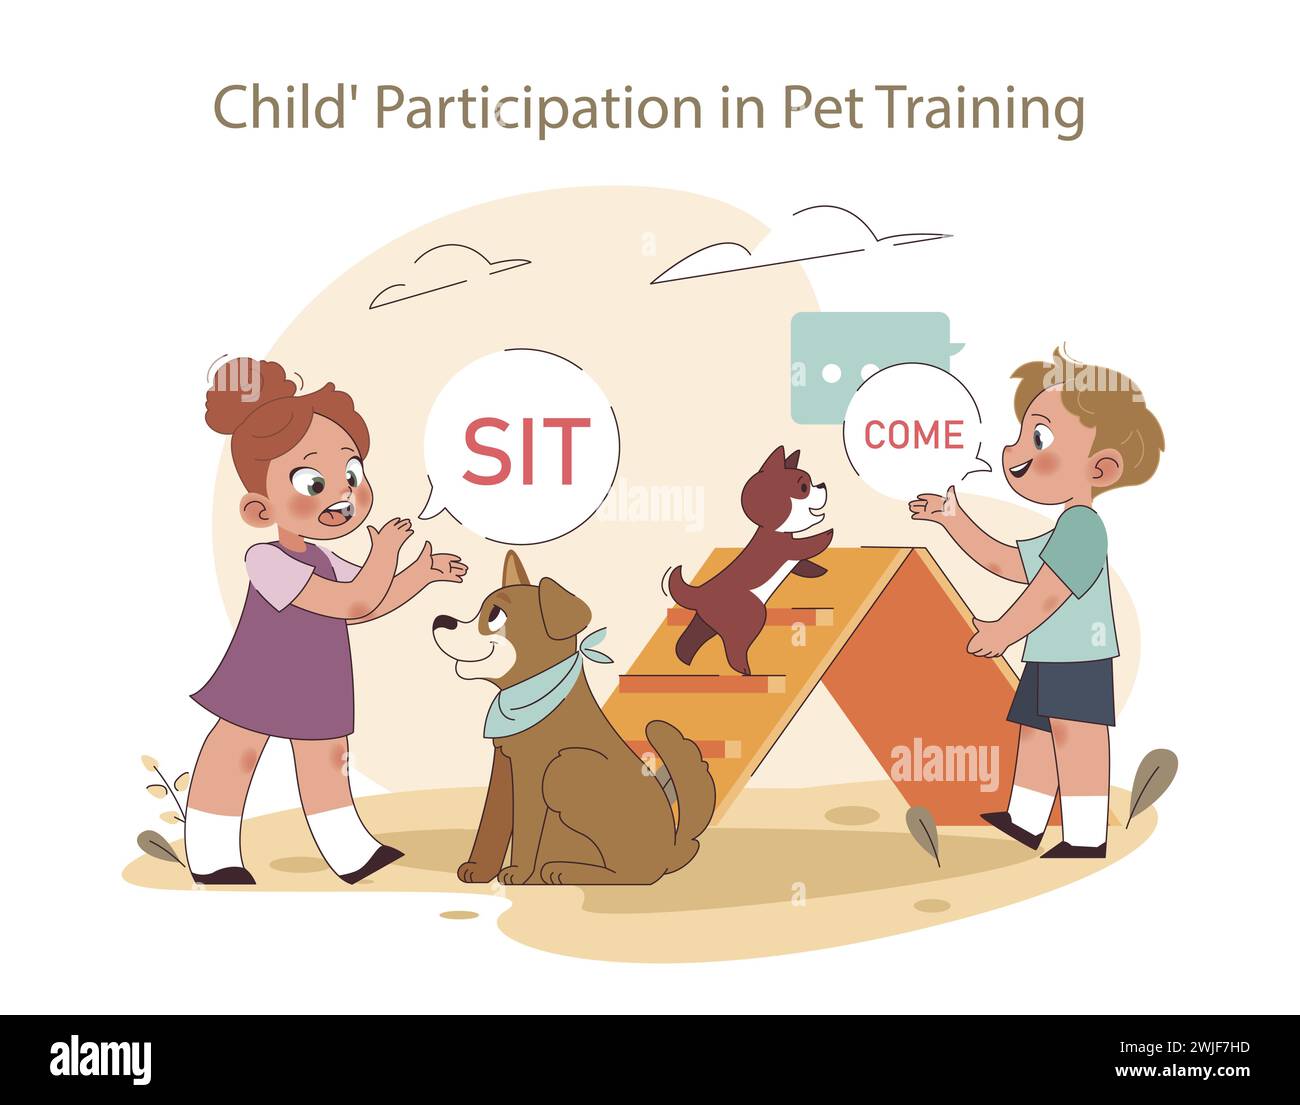 Engagiertes Lernkonzept. Geschwister üben Befehle während des Trainings mit Haustieren aus und betonen ihre aktive Rolle in der Ausbildung des Hundes. Stock Vektor